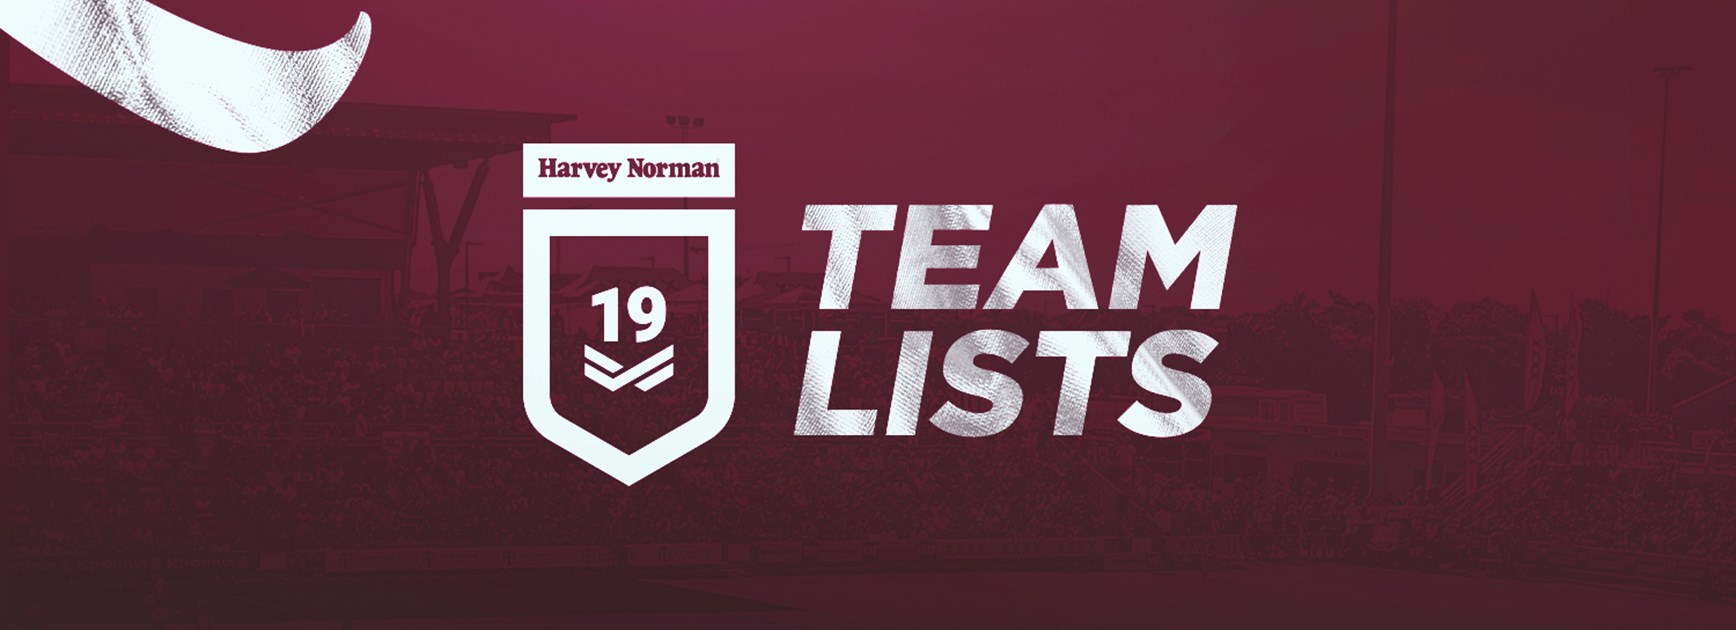 Round 4 Harvey Norman Under 19s team lists